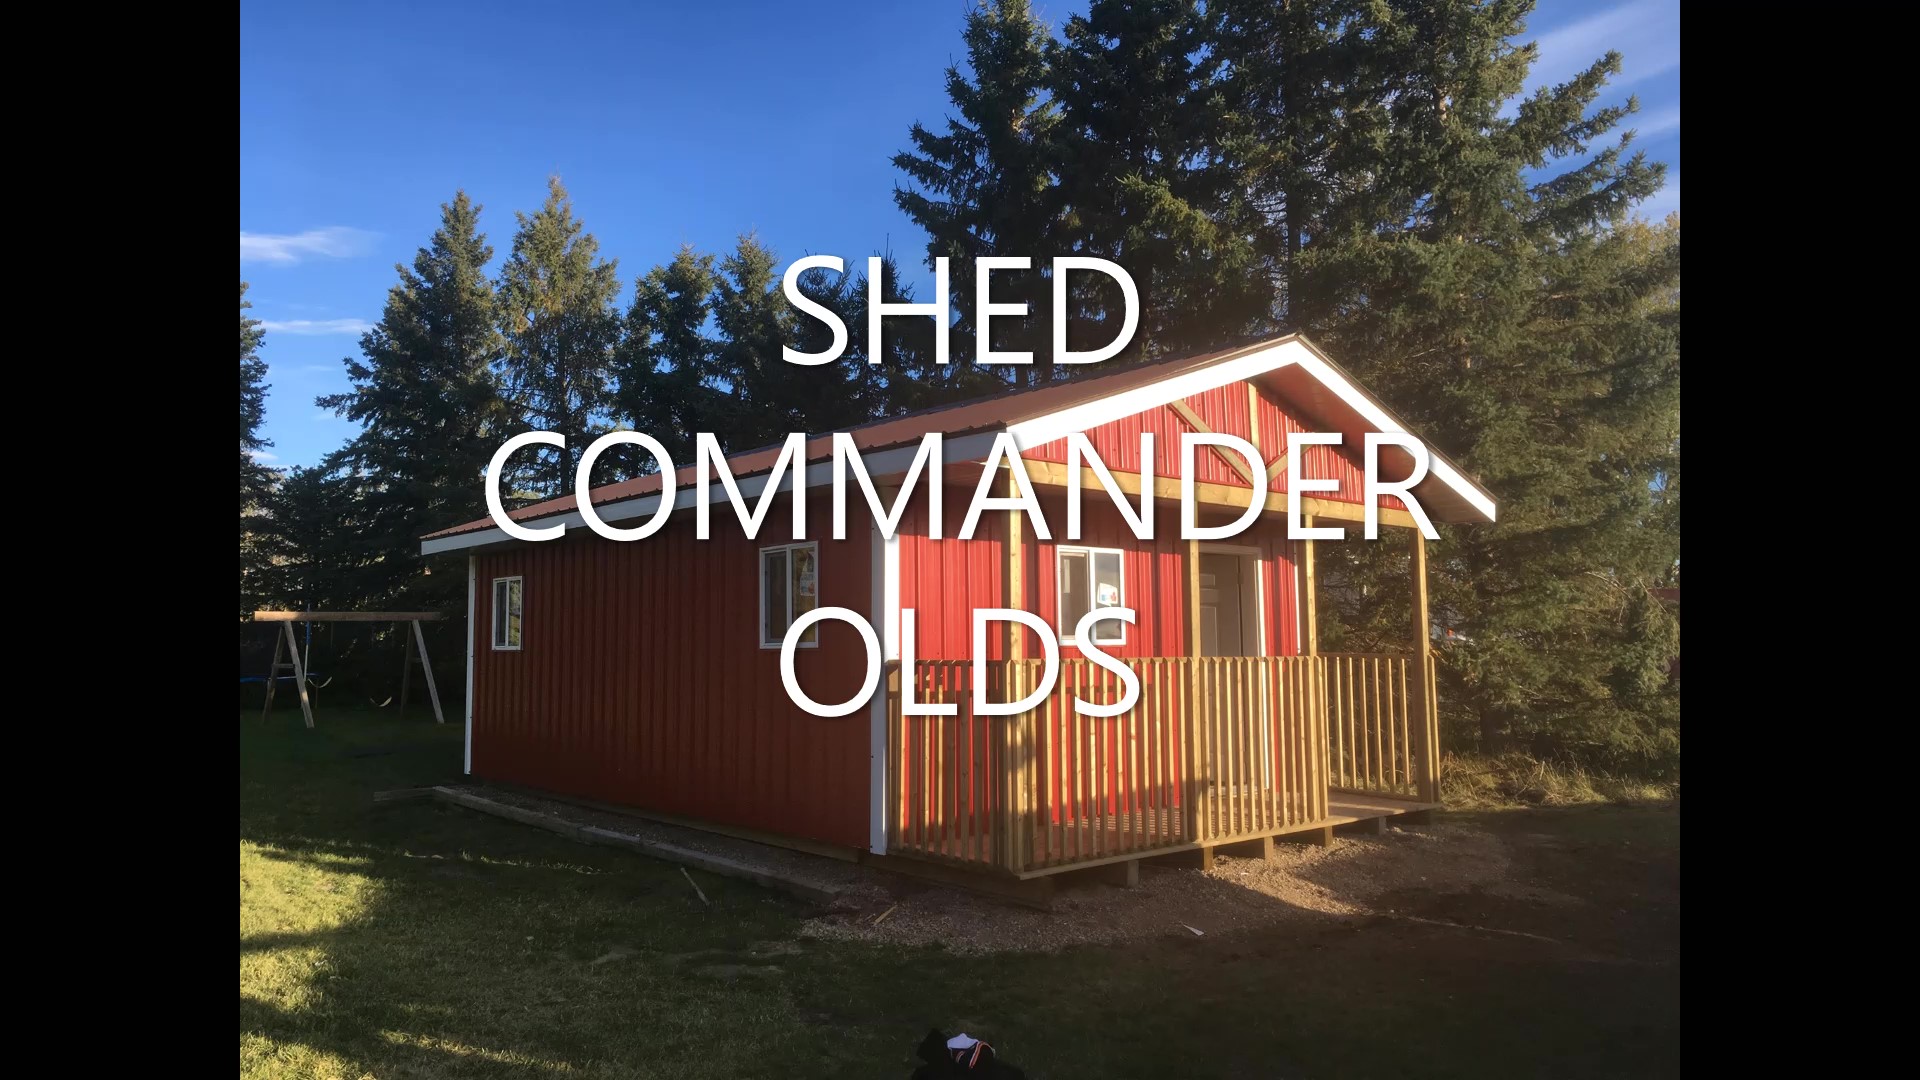 Shed Commander Ltd Olds